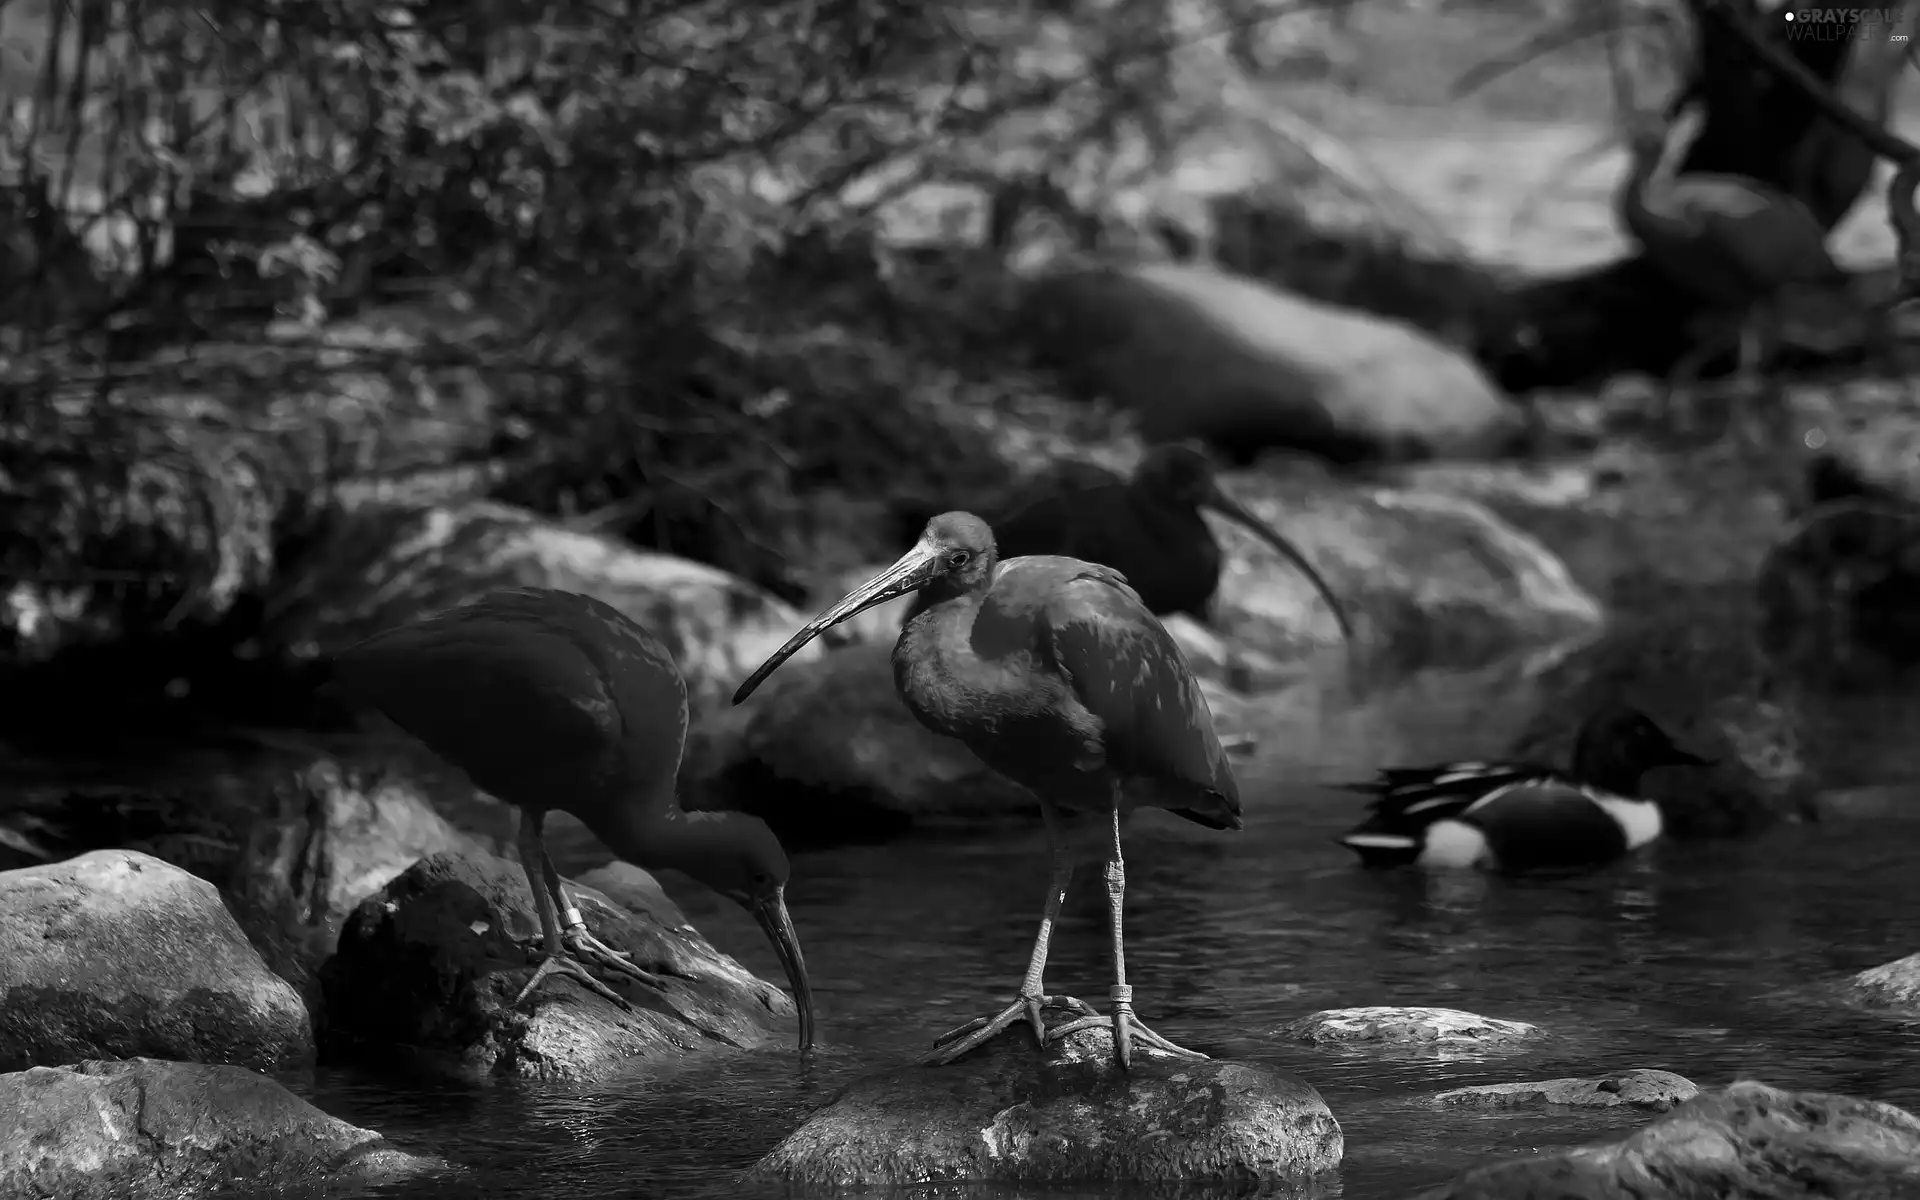 Stones, ibises, water